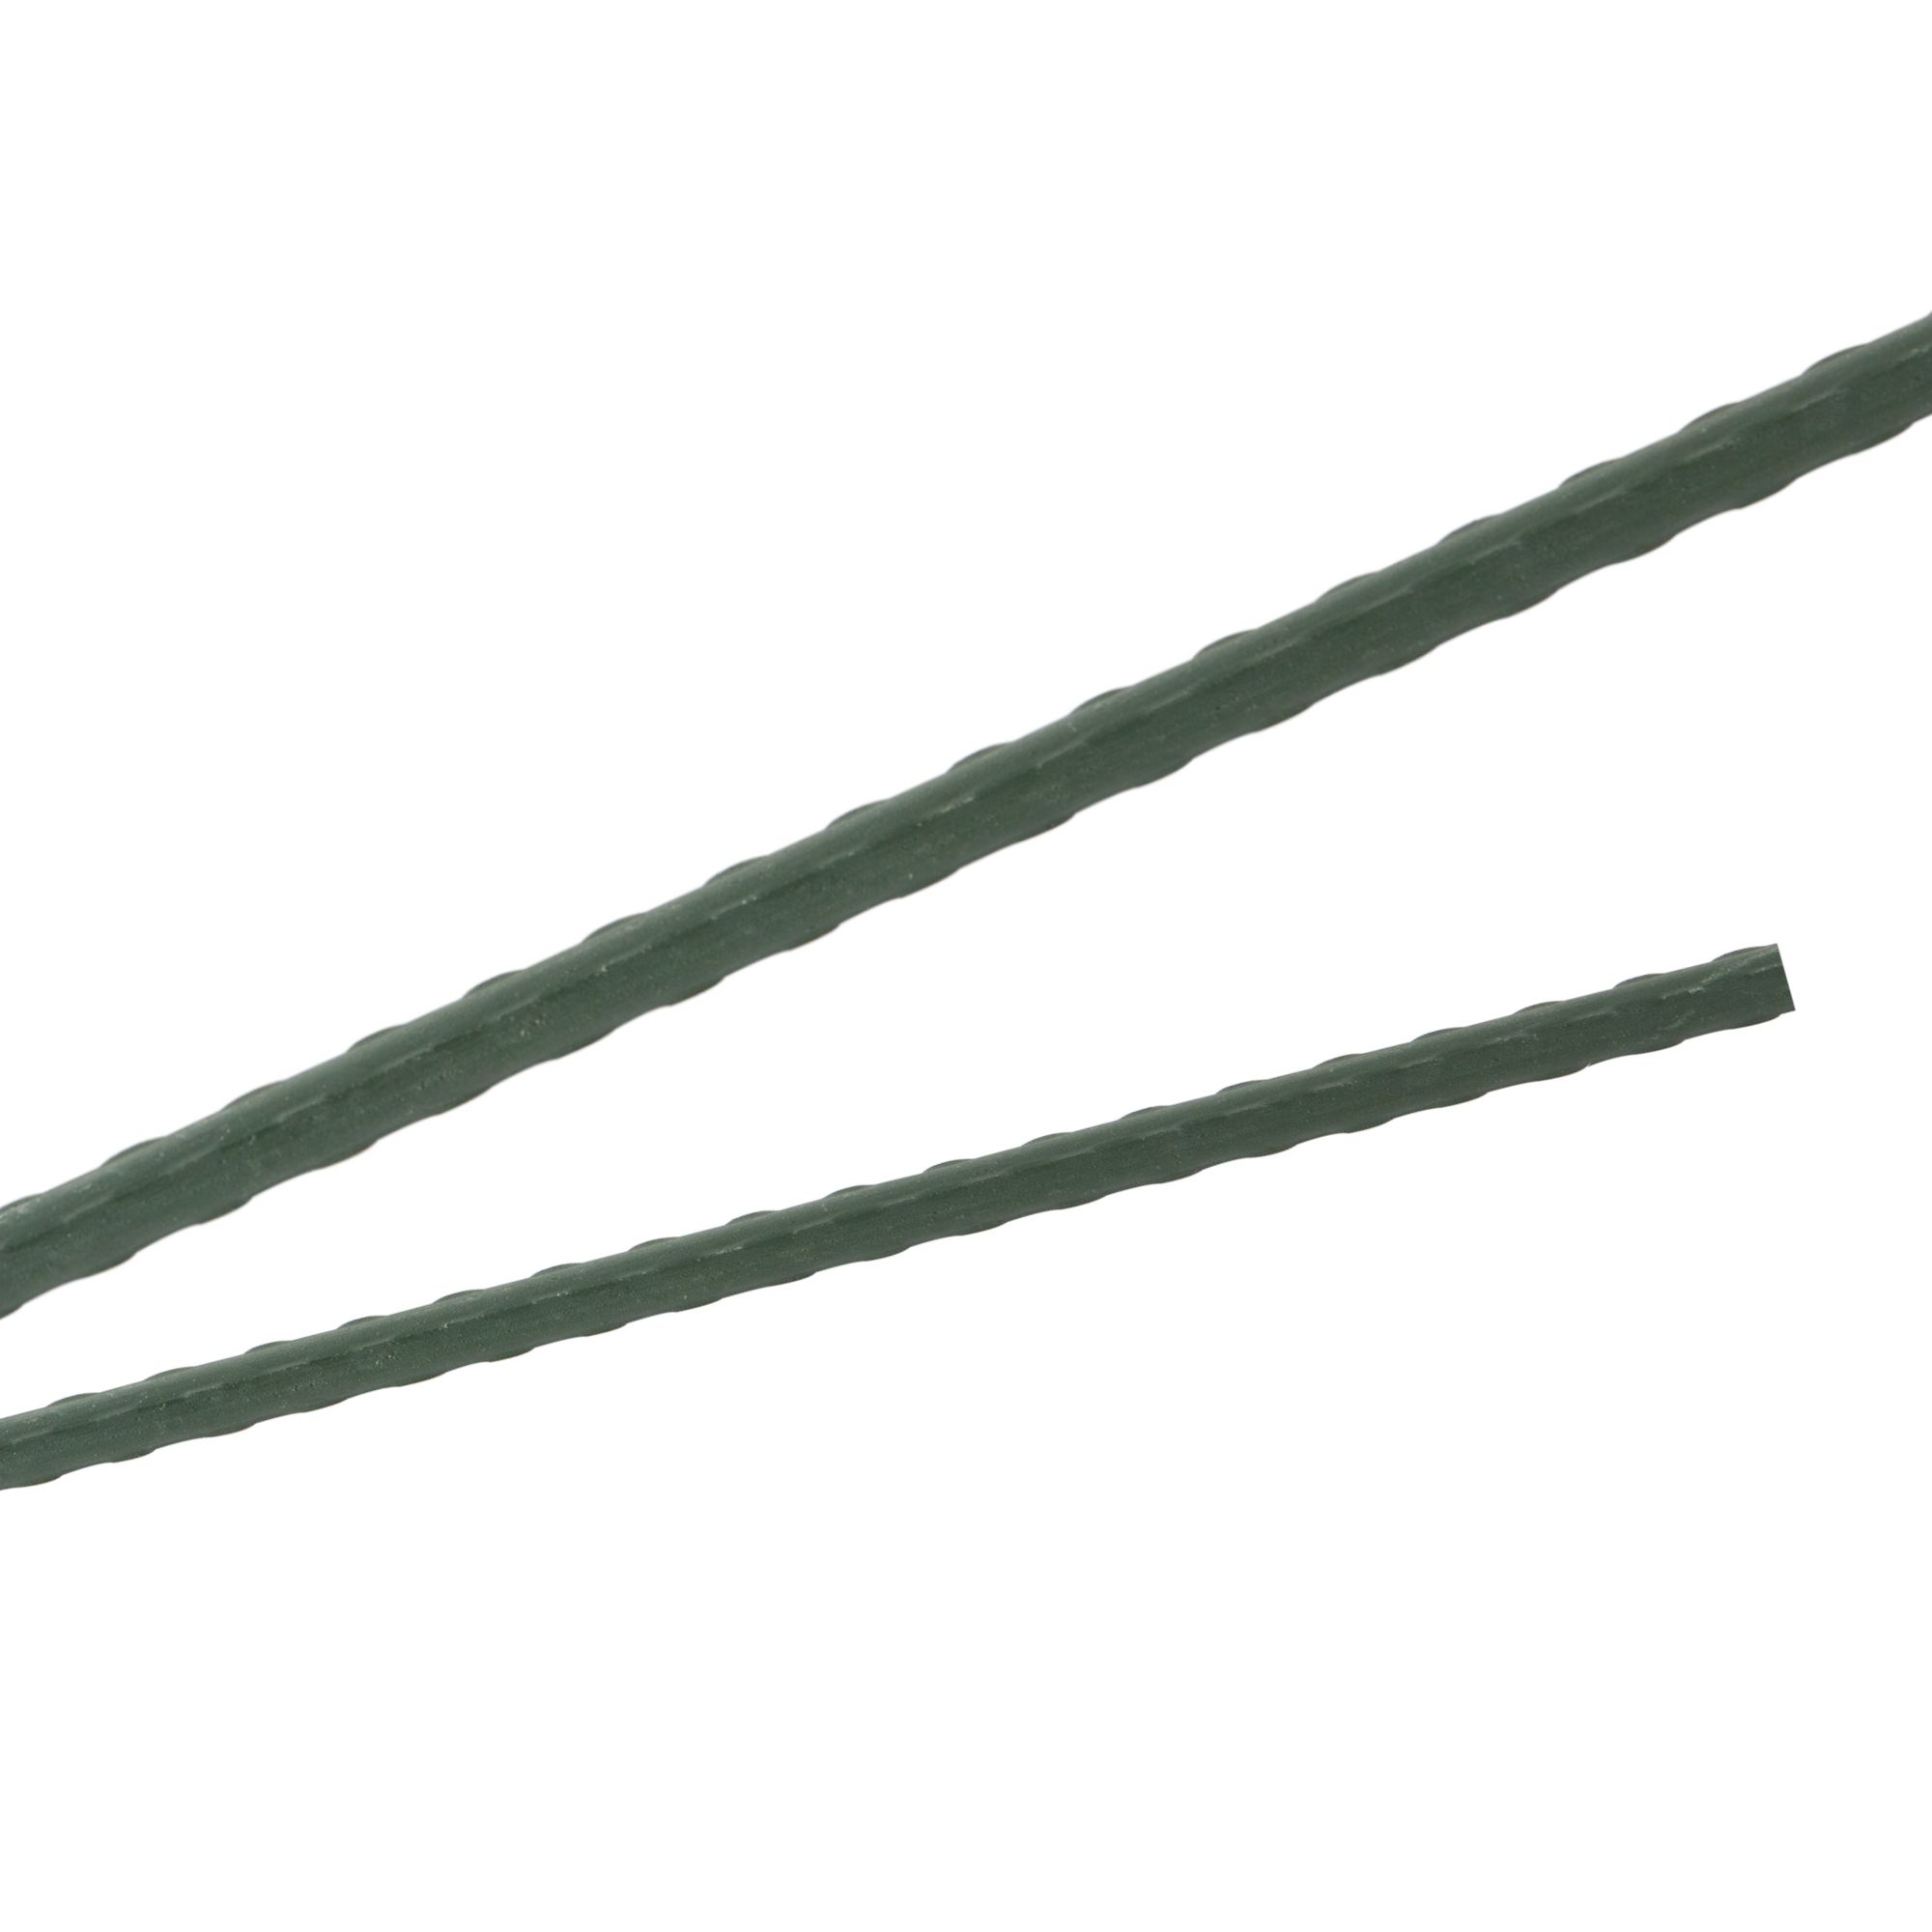 Tyč podpěrná, 11mm, 180cm, kov+PVC, zelená 0.139000 Kg GIGA Sklad20 45656 182